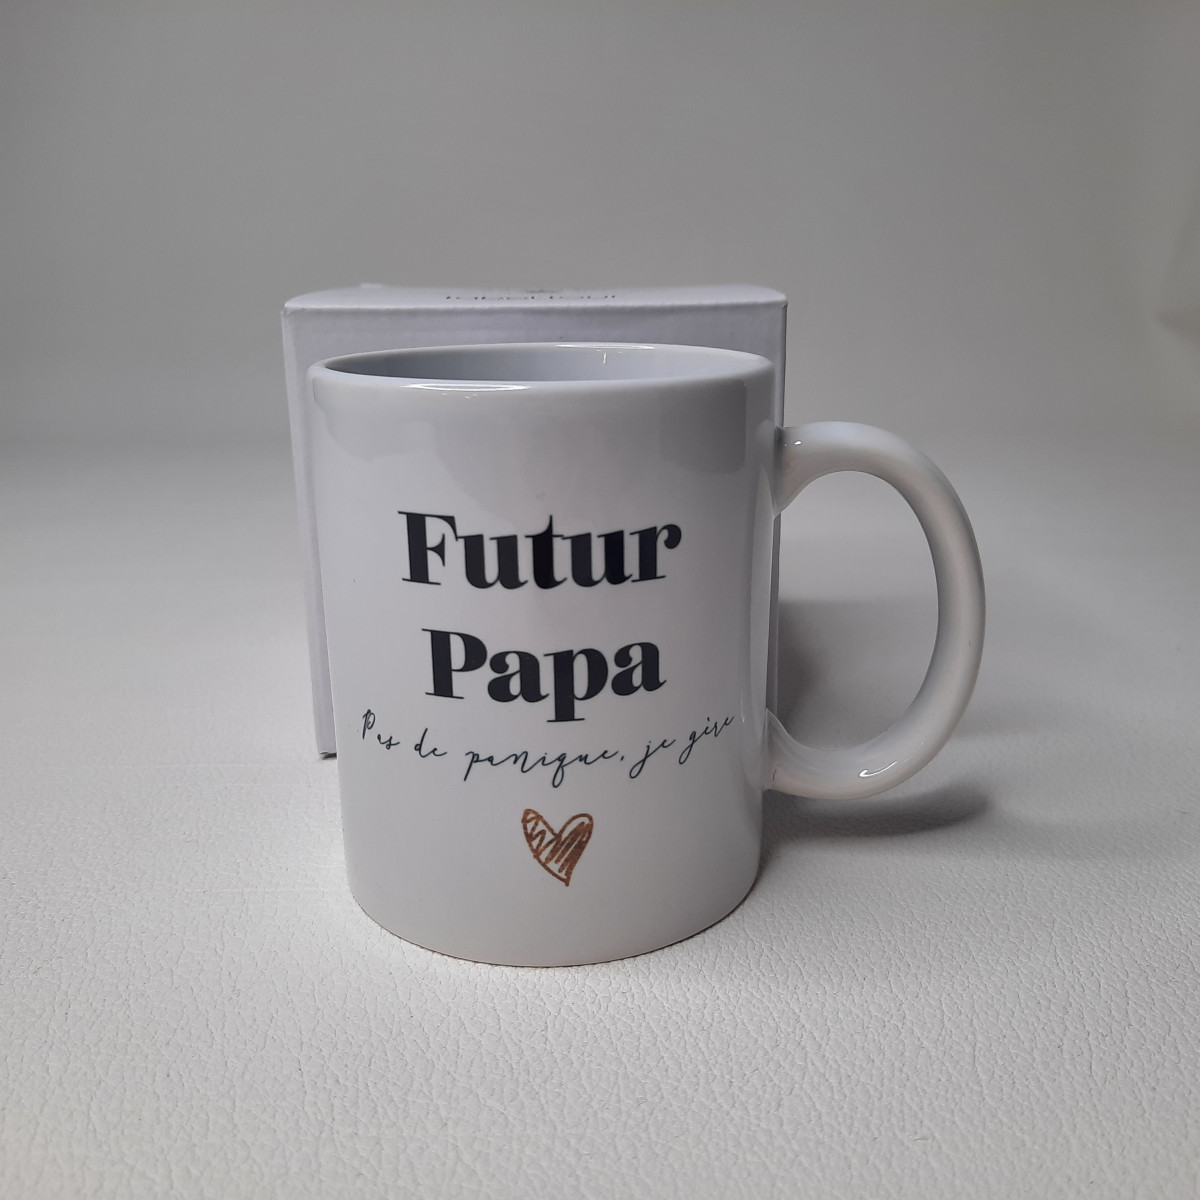 Mug "Futur papa" - photo 6